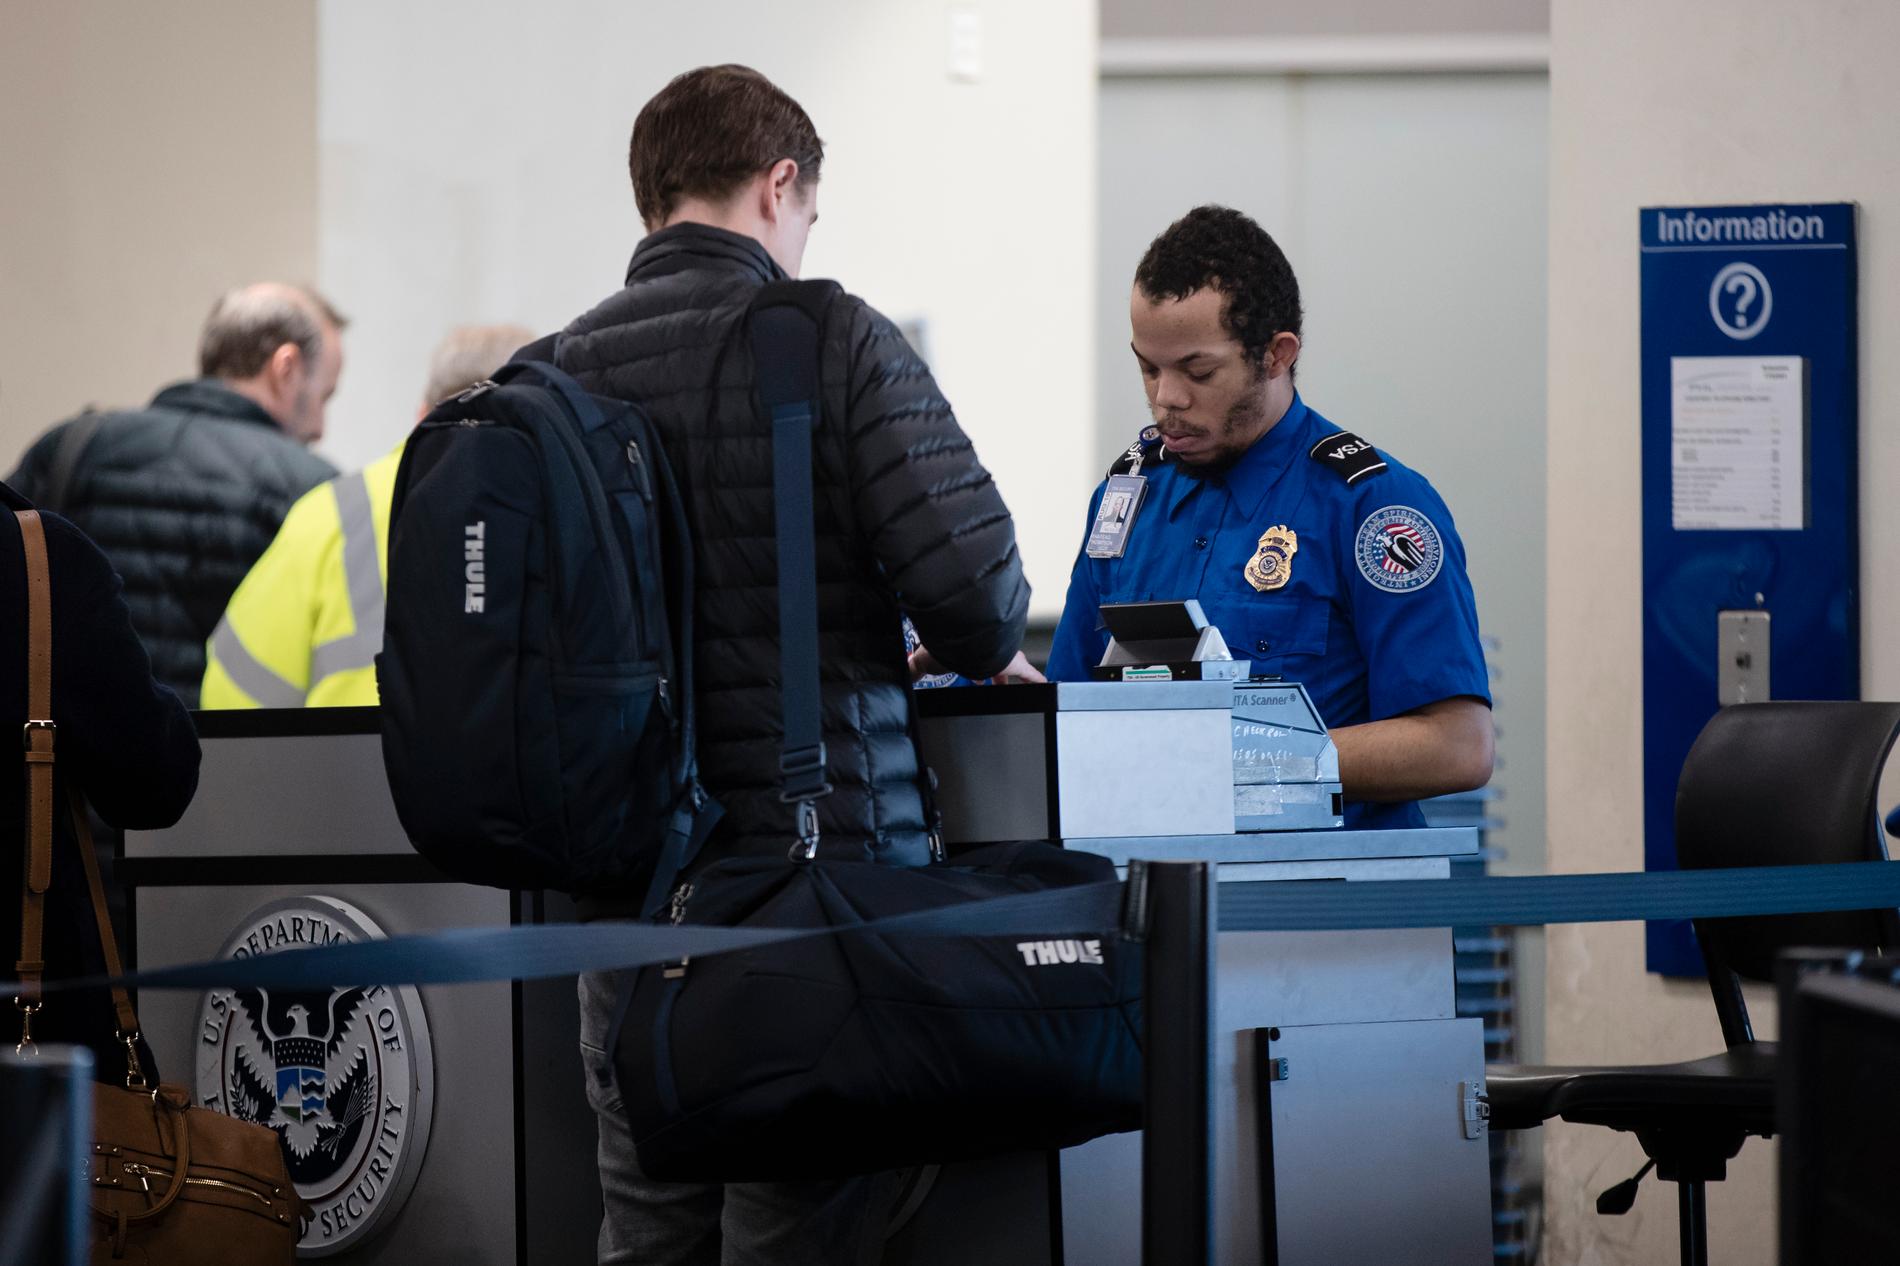 Säkerhetspersonal undersöker passagerare på den internationella flygplatsen i Philadelphia. Arkivbild.